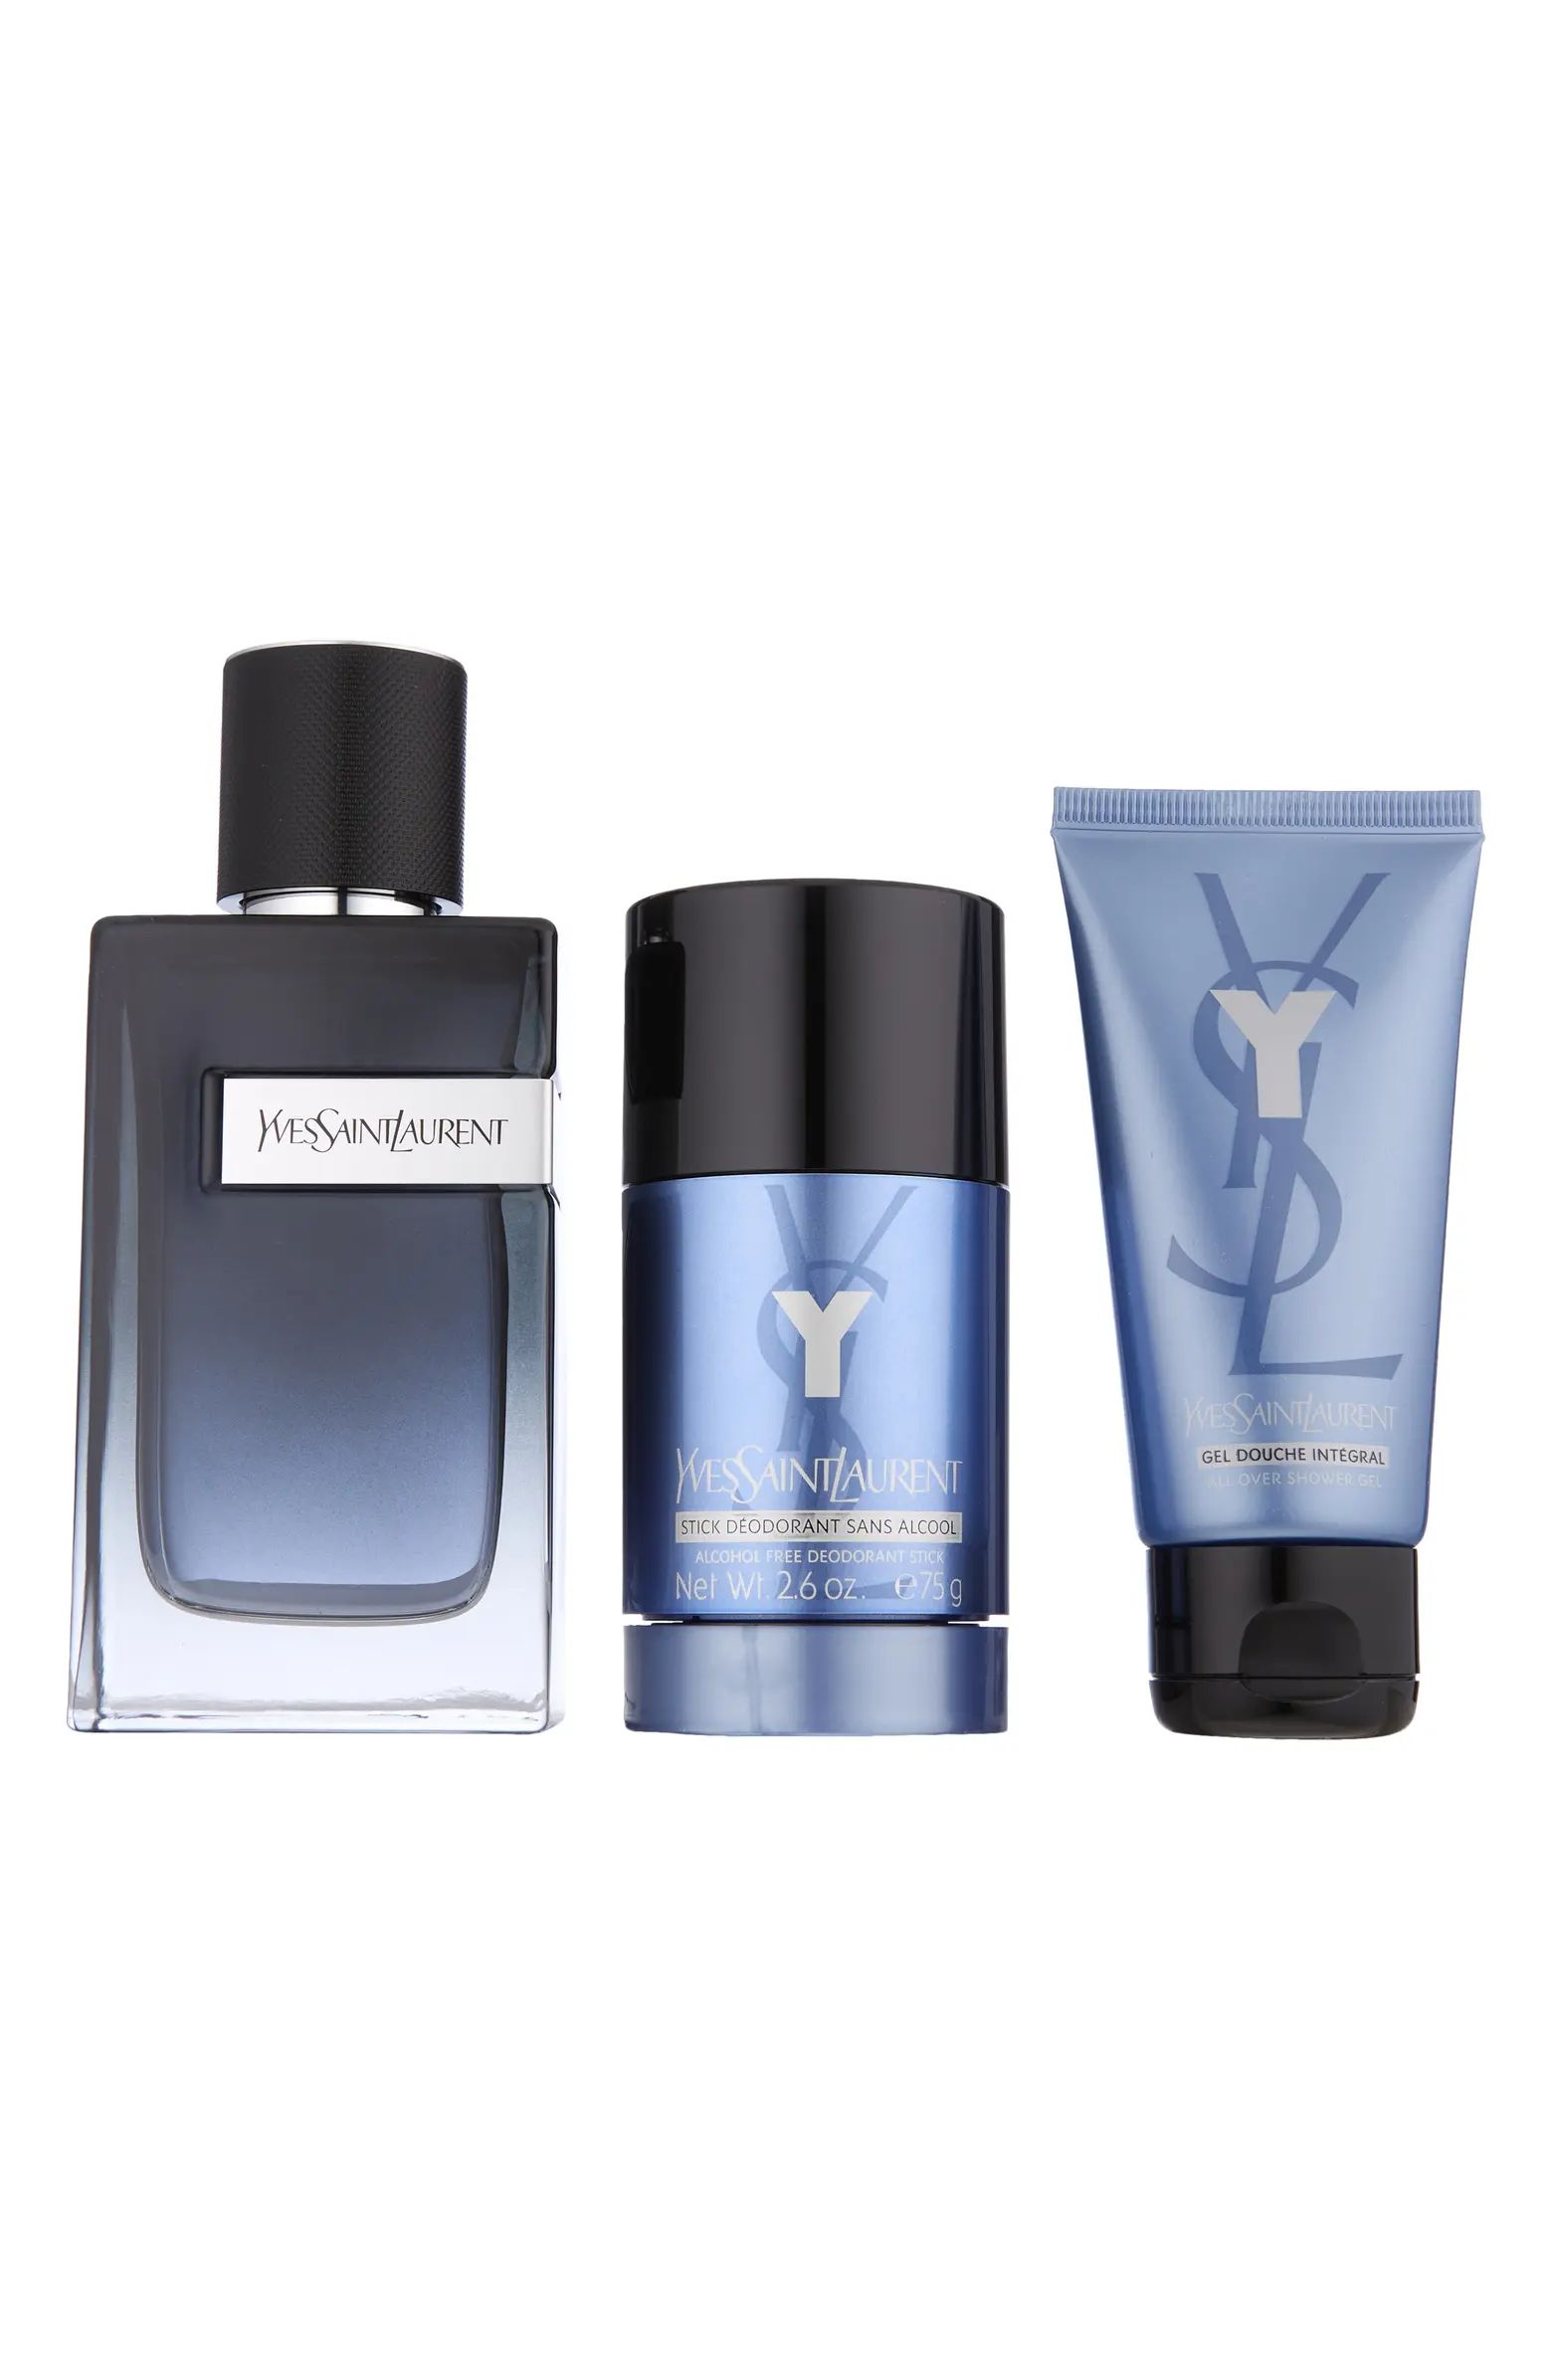 Yves Saint Laurent Y Eau de Parfum Set $167 Value | Nordstrom | Nordstrom